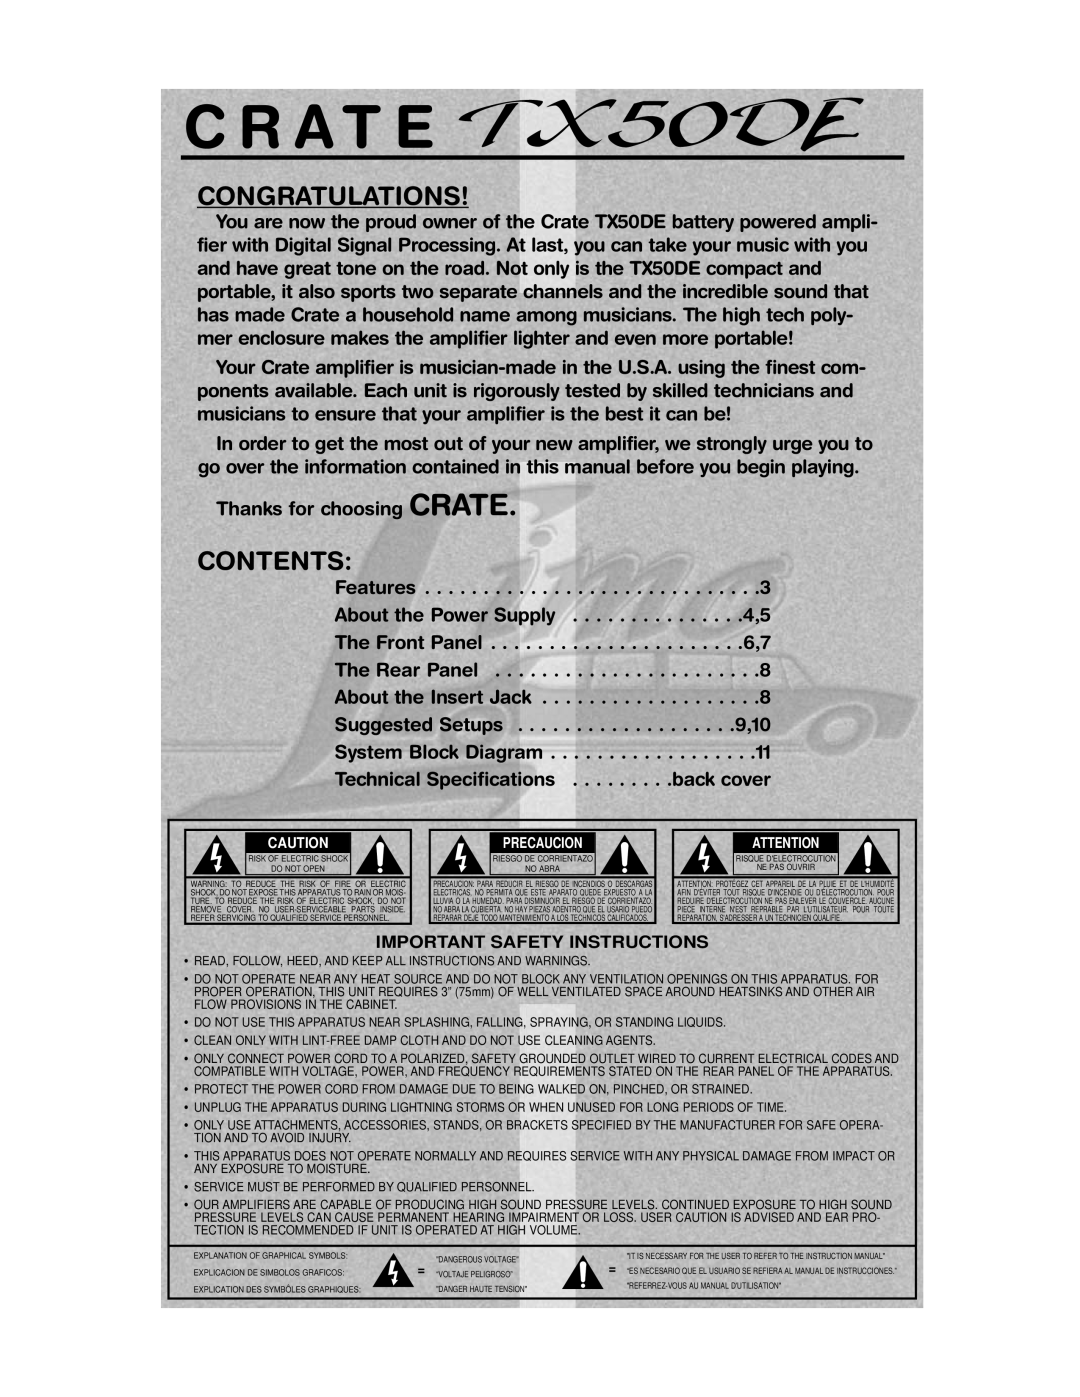 Crate Amplifiers TX50DE manual C R A T E, Congratulations, Contents 